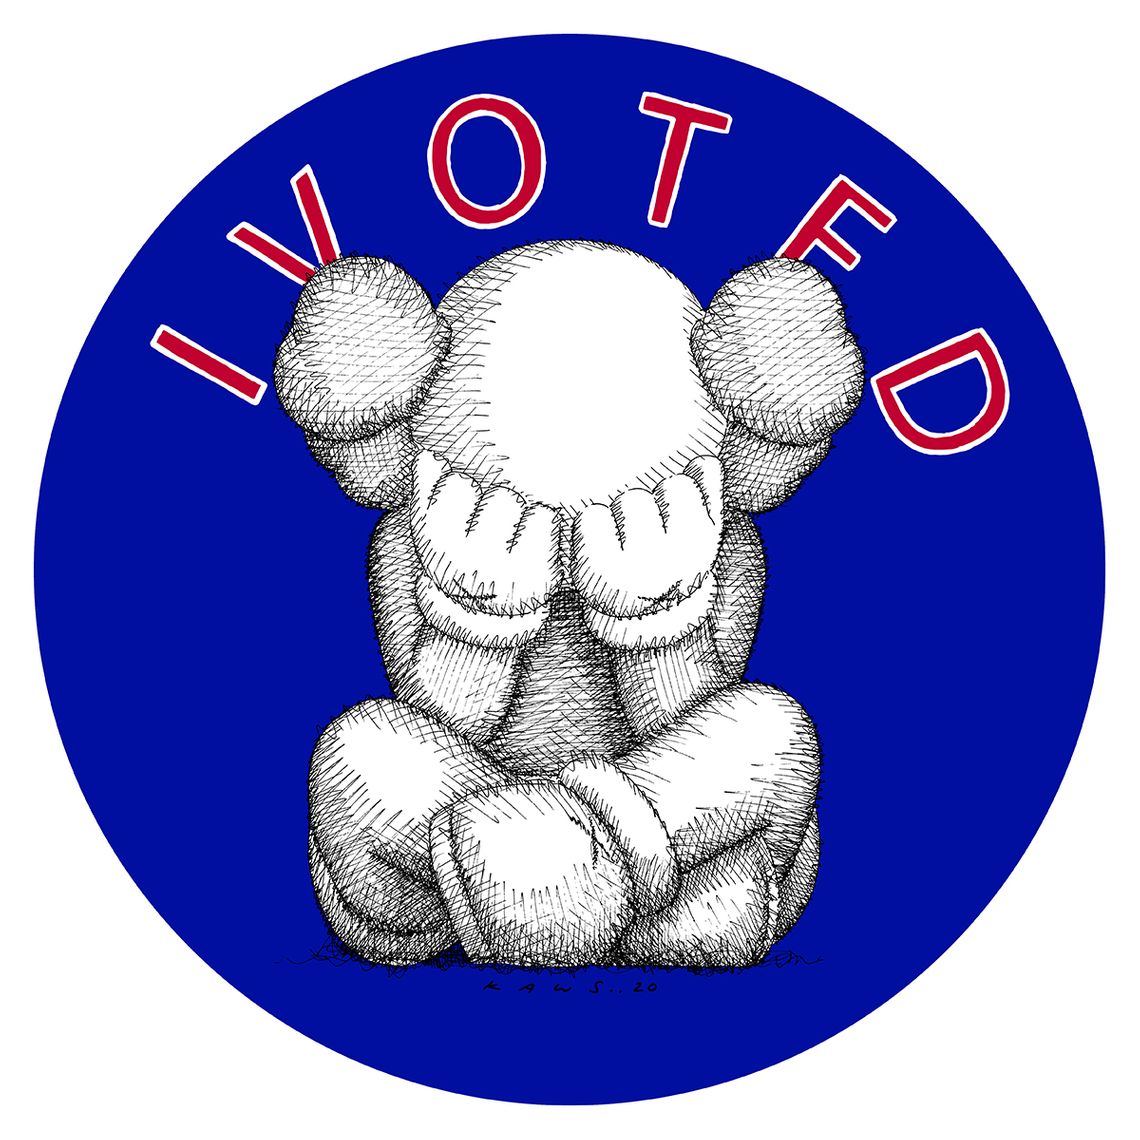 Kaws' 'I Voted' sticker, via New York Magazine.